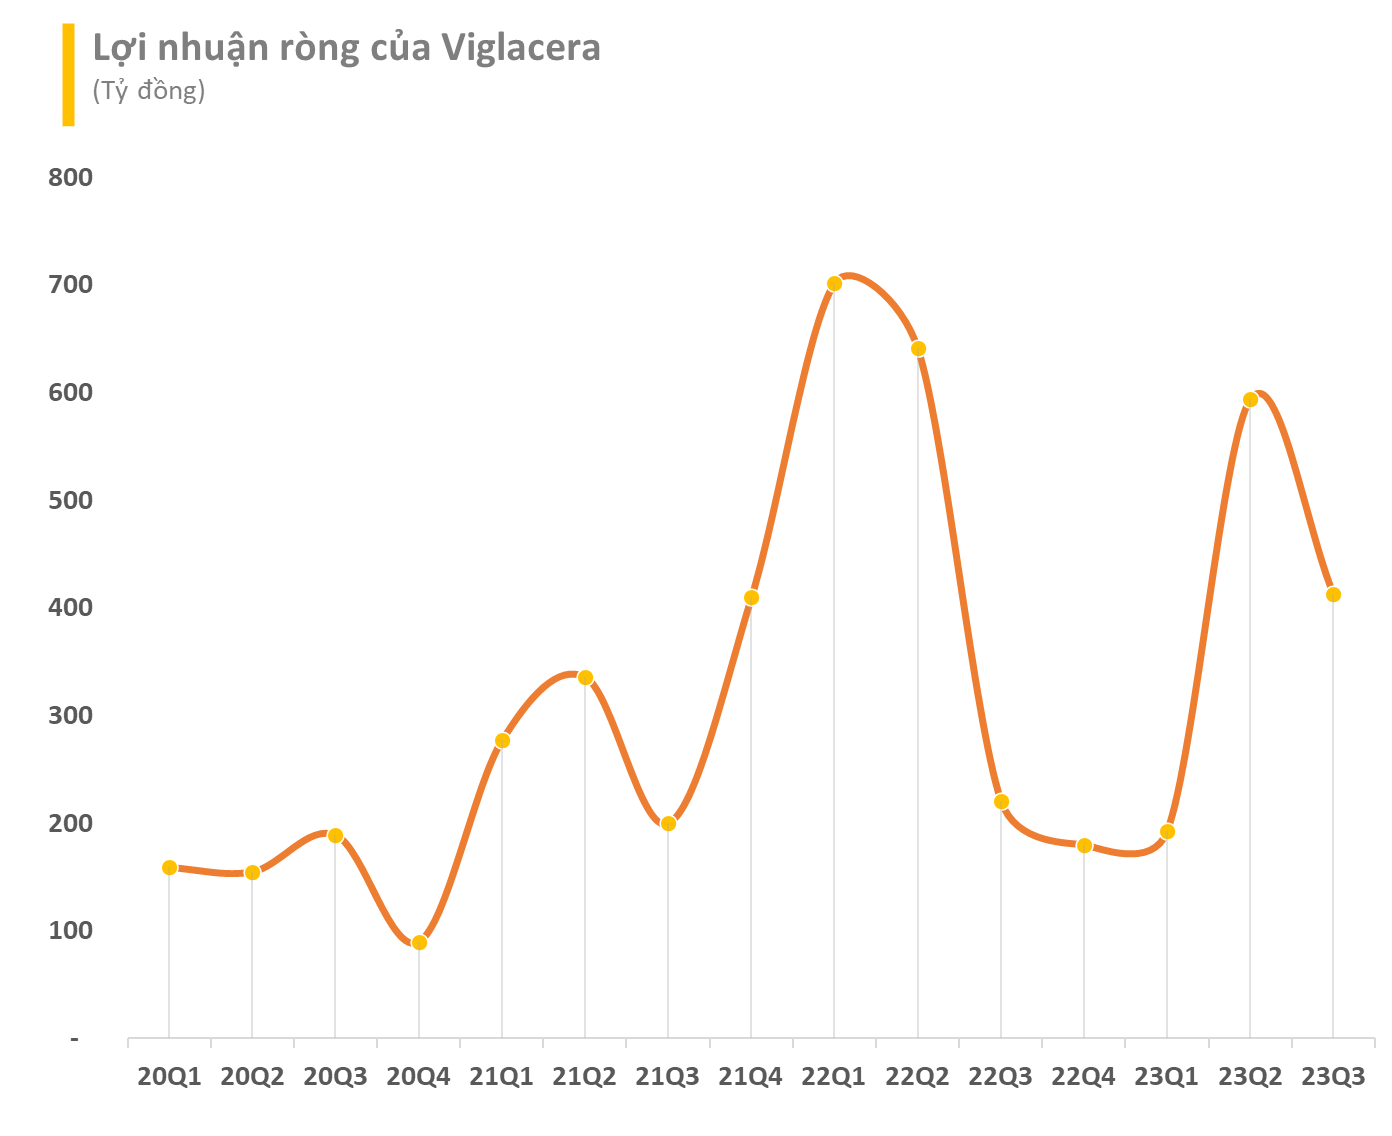 Viglacera ước lãi hơn 1.600 tỷ đồng trong 10 tháng đầu năm 2023 - Ảnh 2.